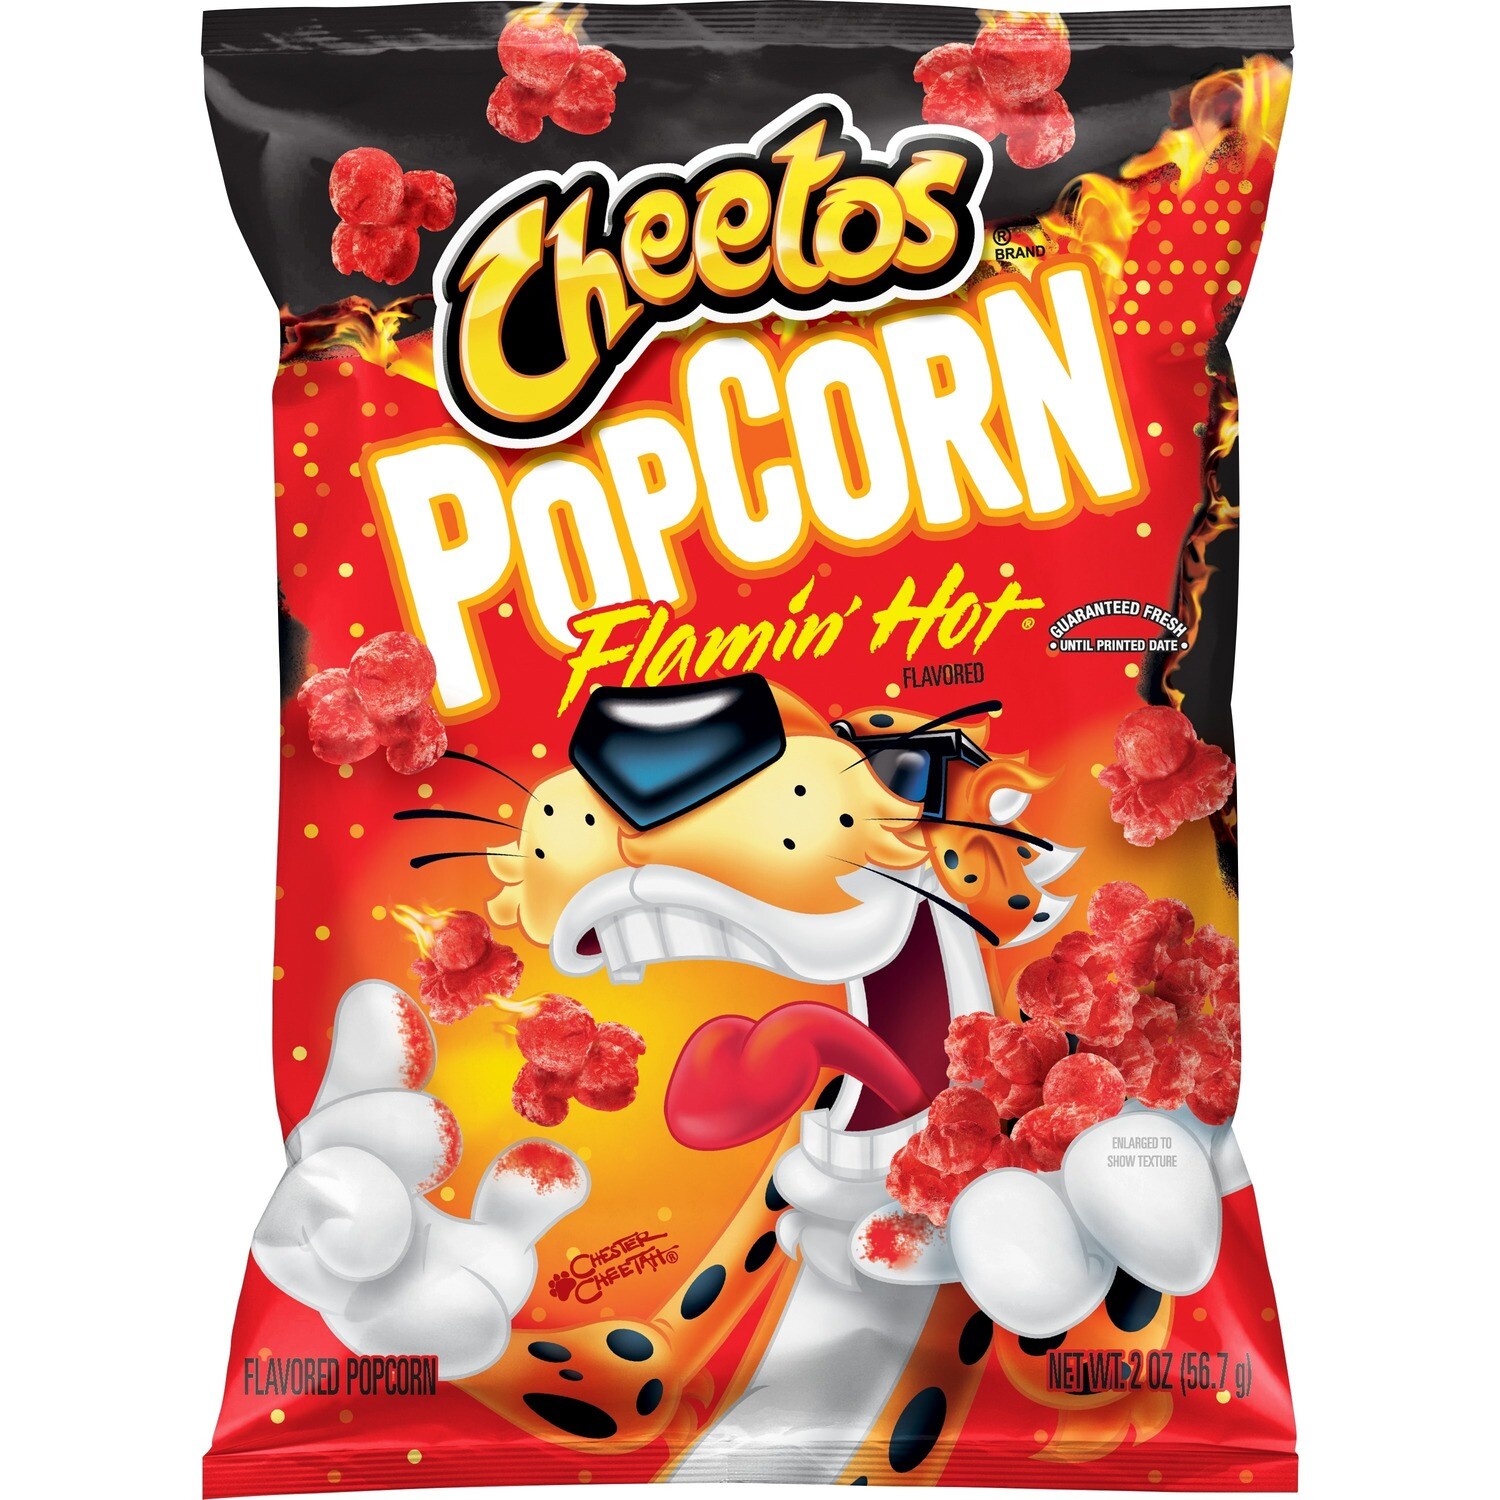 Cheetos Popcorn Flamin Hot